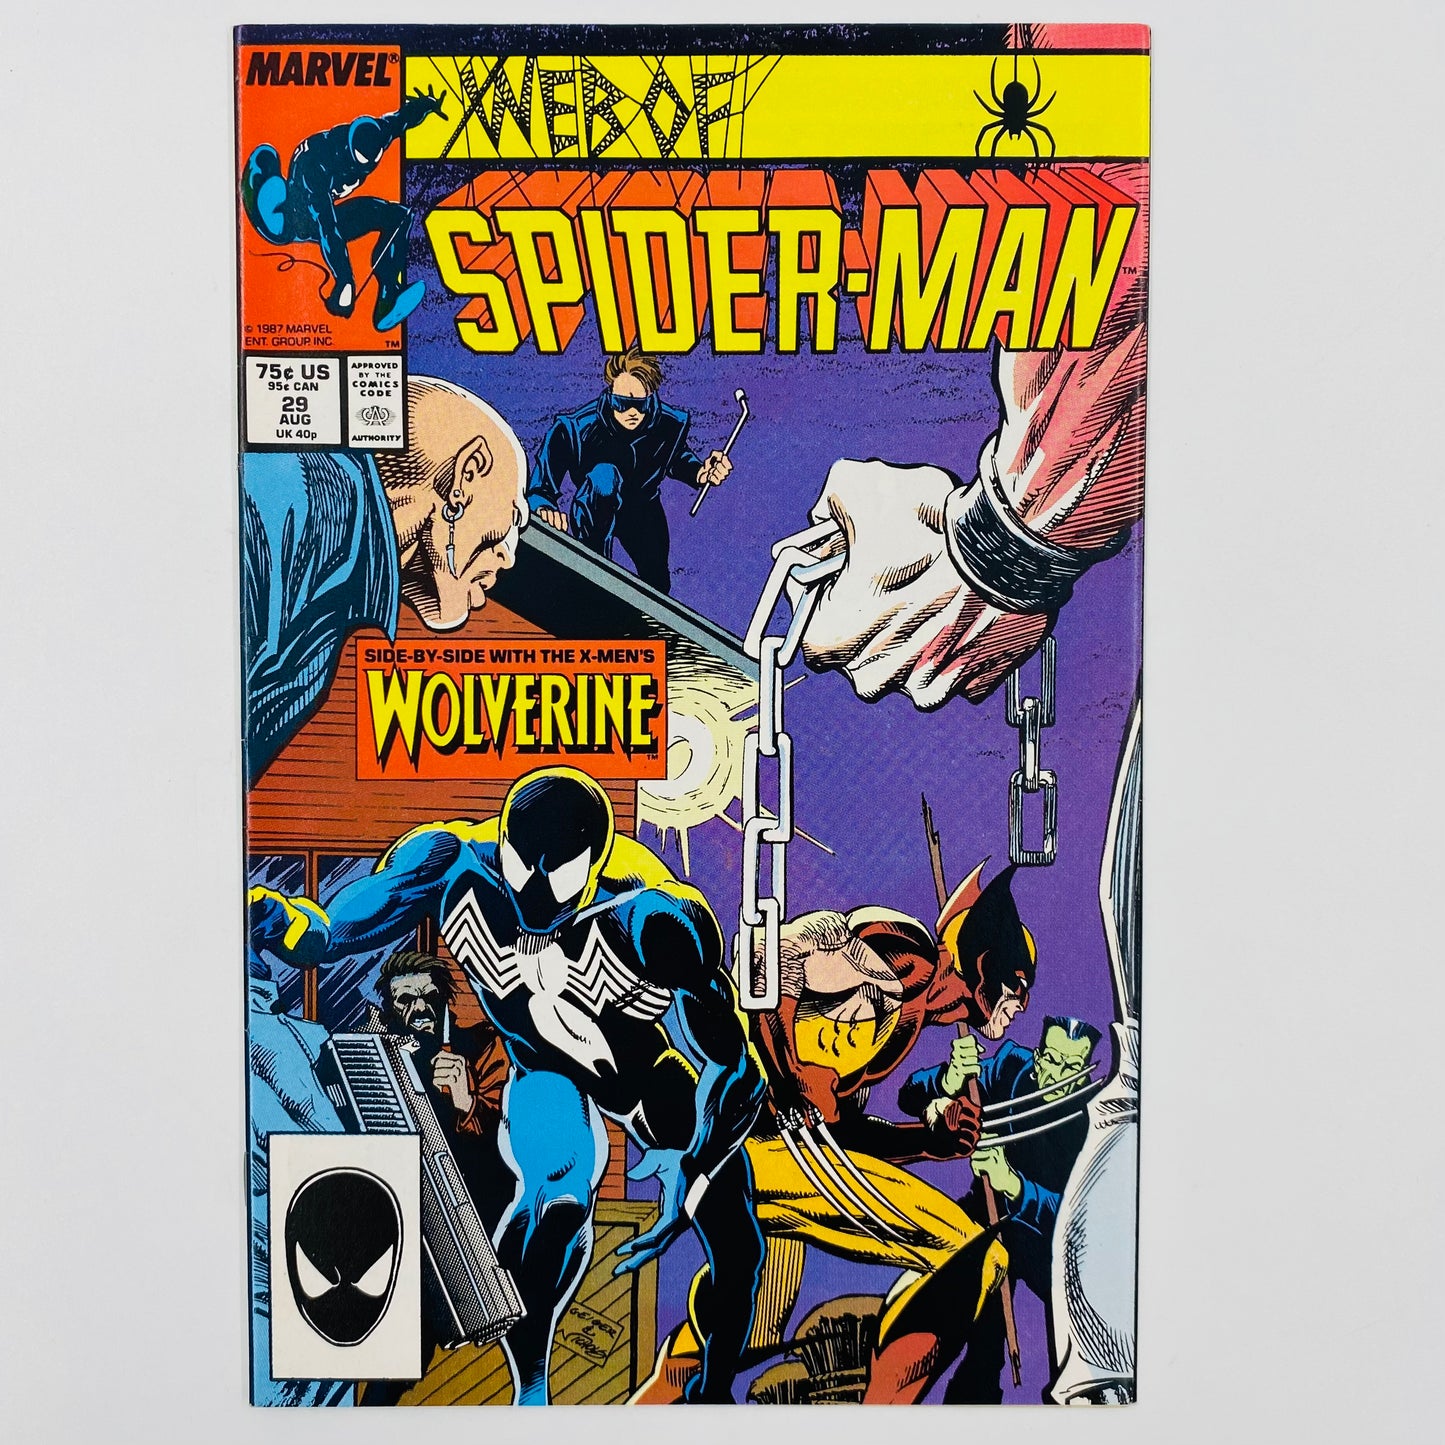 Web of Spider-Man #29 “Mask” (1987) Marvel